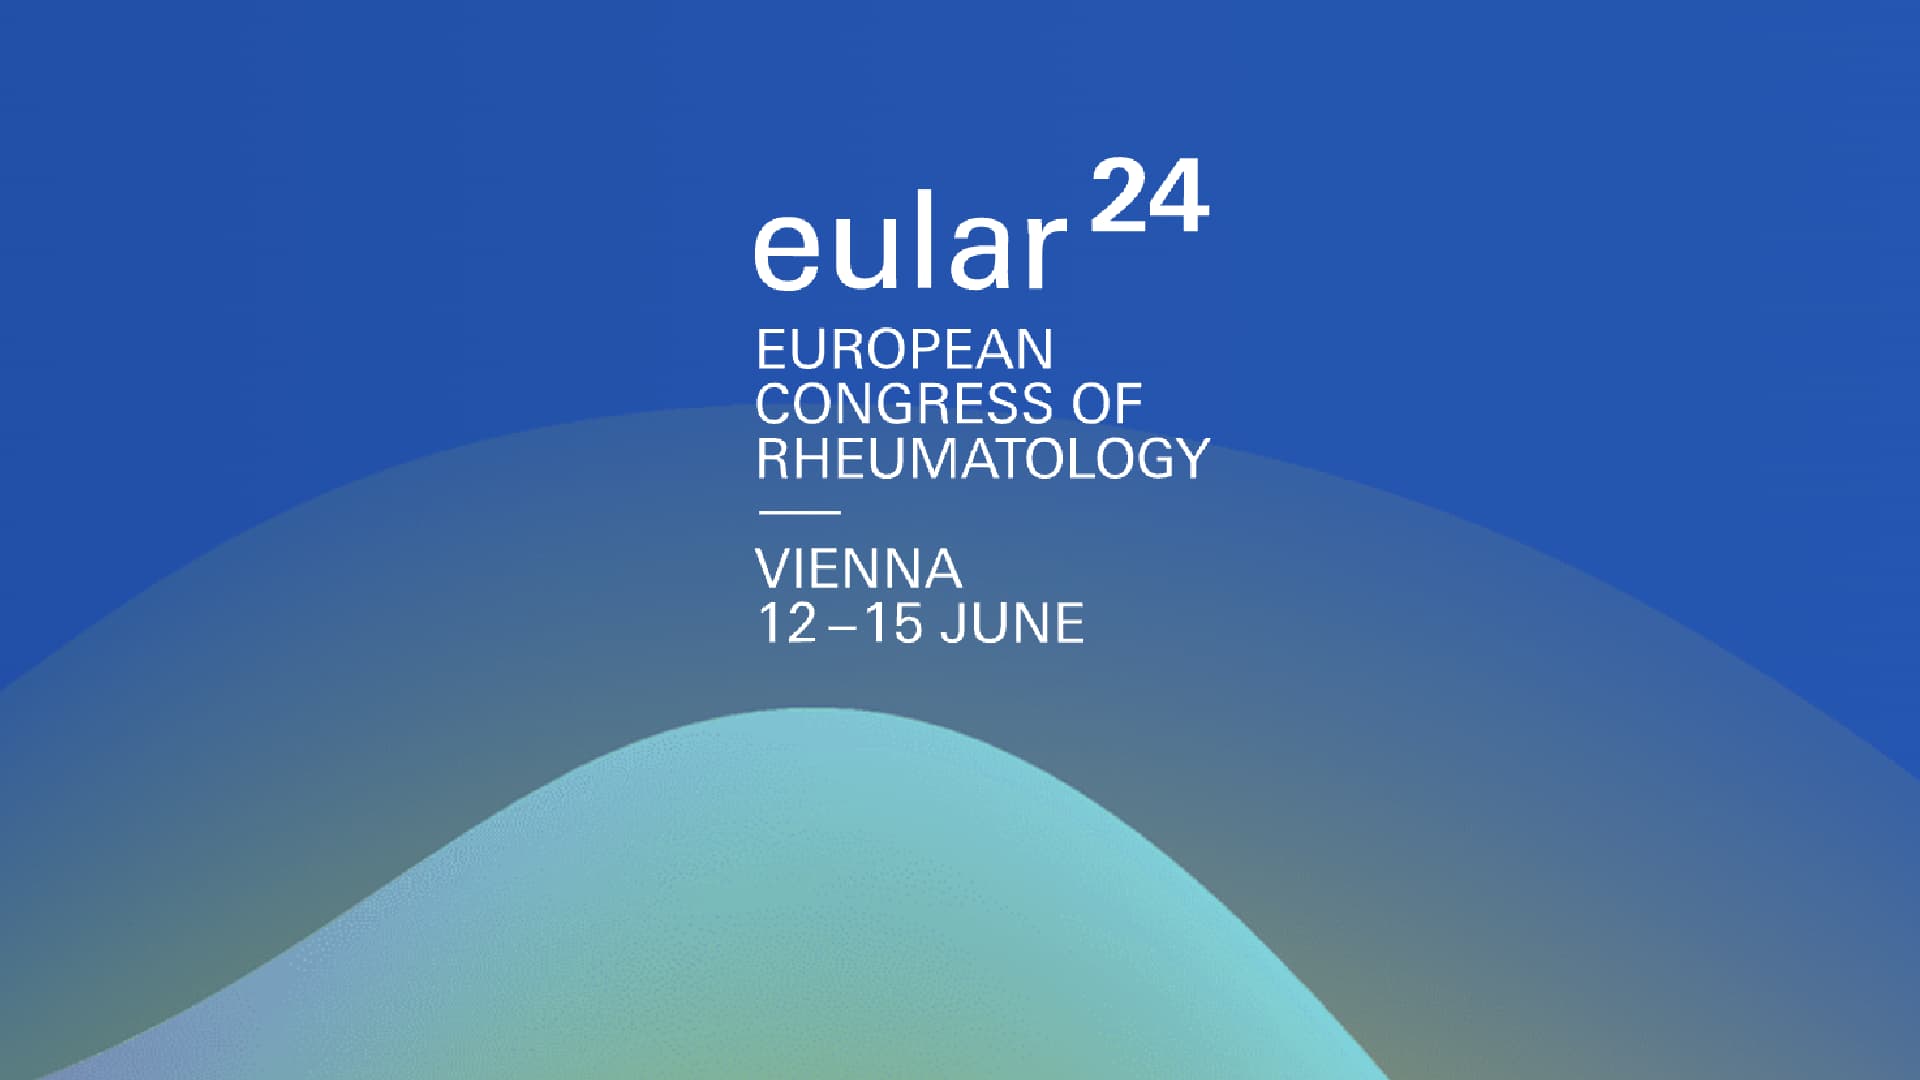 European Alliance of Associations for Rheumatology (EULAR) congress